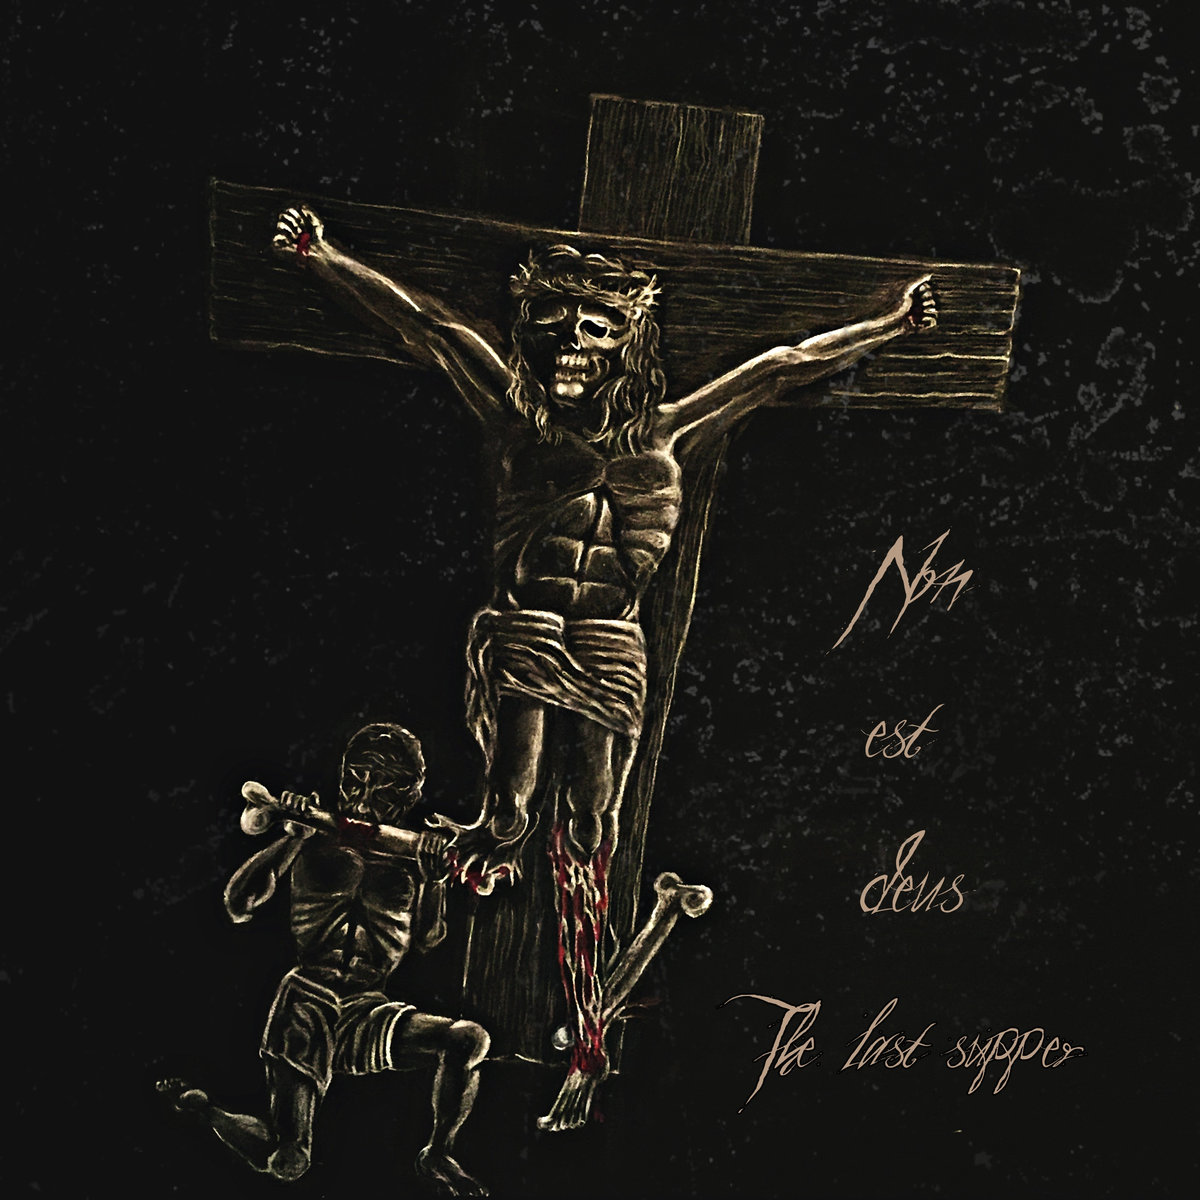 Non Est Deus - The Last Supper (2018)